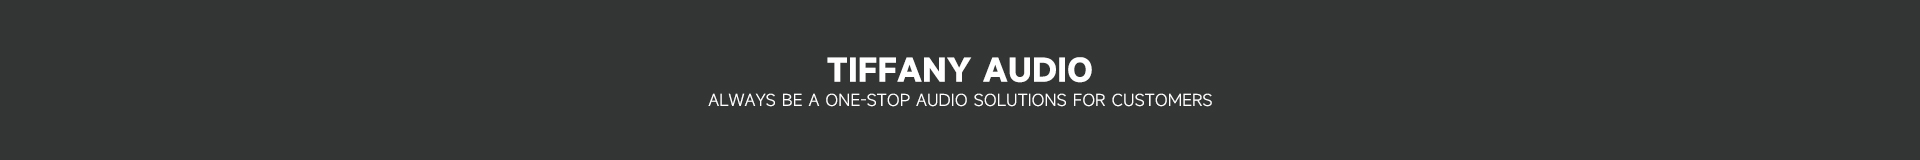 Tiffany Audio